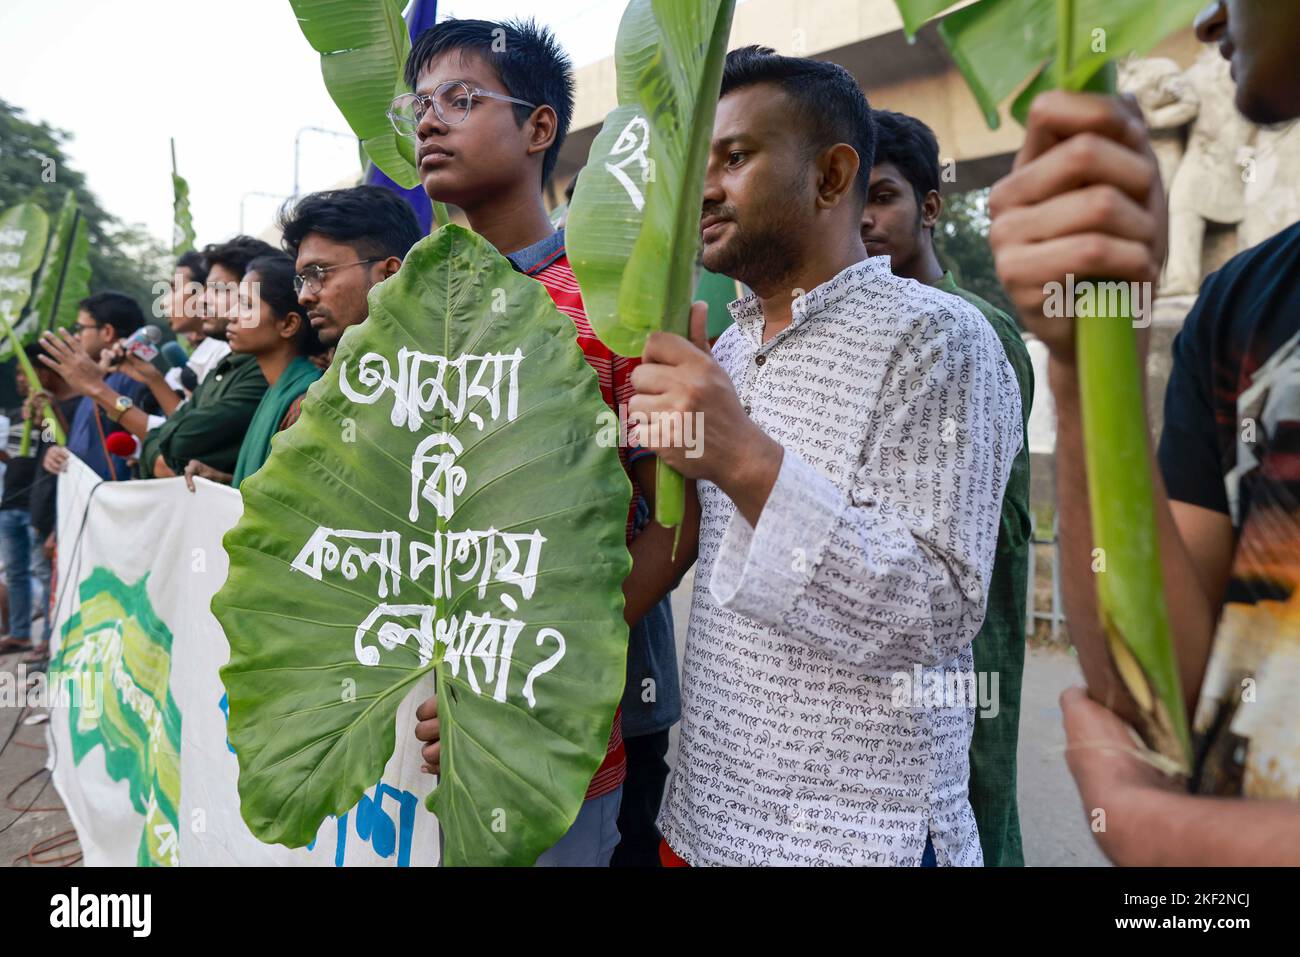 Dhaka, Bangladesch. 14.. November 2022. Linke Studenten aus Bangladesch halten Plakate in Form von Blättern, während sie sich in einem Protest gegen die Preiserhöhung verschiedener Unterrichtsmaterialien, darunter Papier, in Dhaka, Bangladesch, am 14. November 2022 versammeln. Während des Protestes kritisierten sie die Regierung für die Erhöhung des Preises für Unterrichtsmaterialien, die Führer der Organisation sagten, dass, wenn die Studenten keine neuen Bücher im Januar bekommen, sie eine Bewegung starten werden, um die Regierung zu Fall zu bringen. (Bild: © Suvra Kanti das/ZUMA Press Wire) Stockfoto